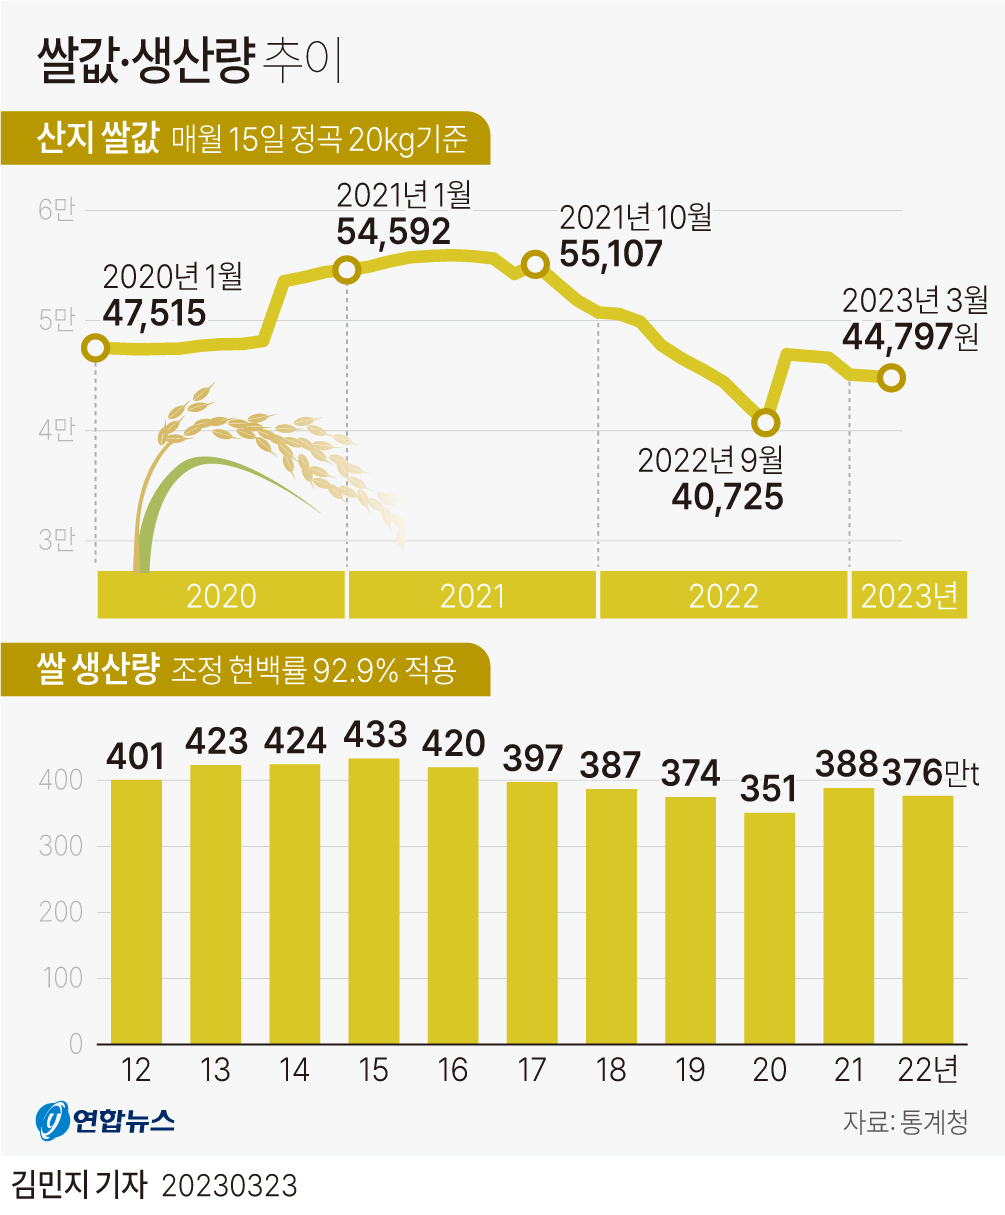 [그래픽] 쌀값·생산량 추이